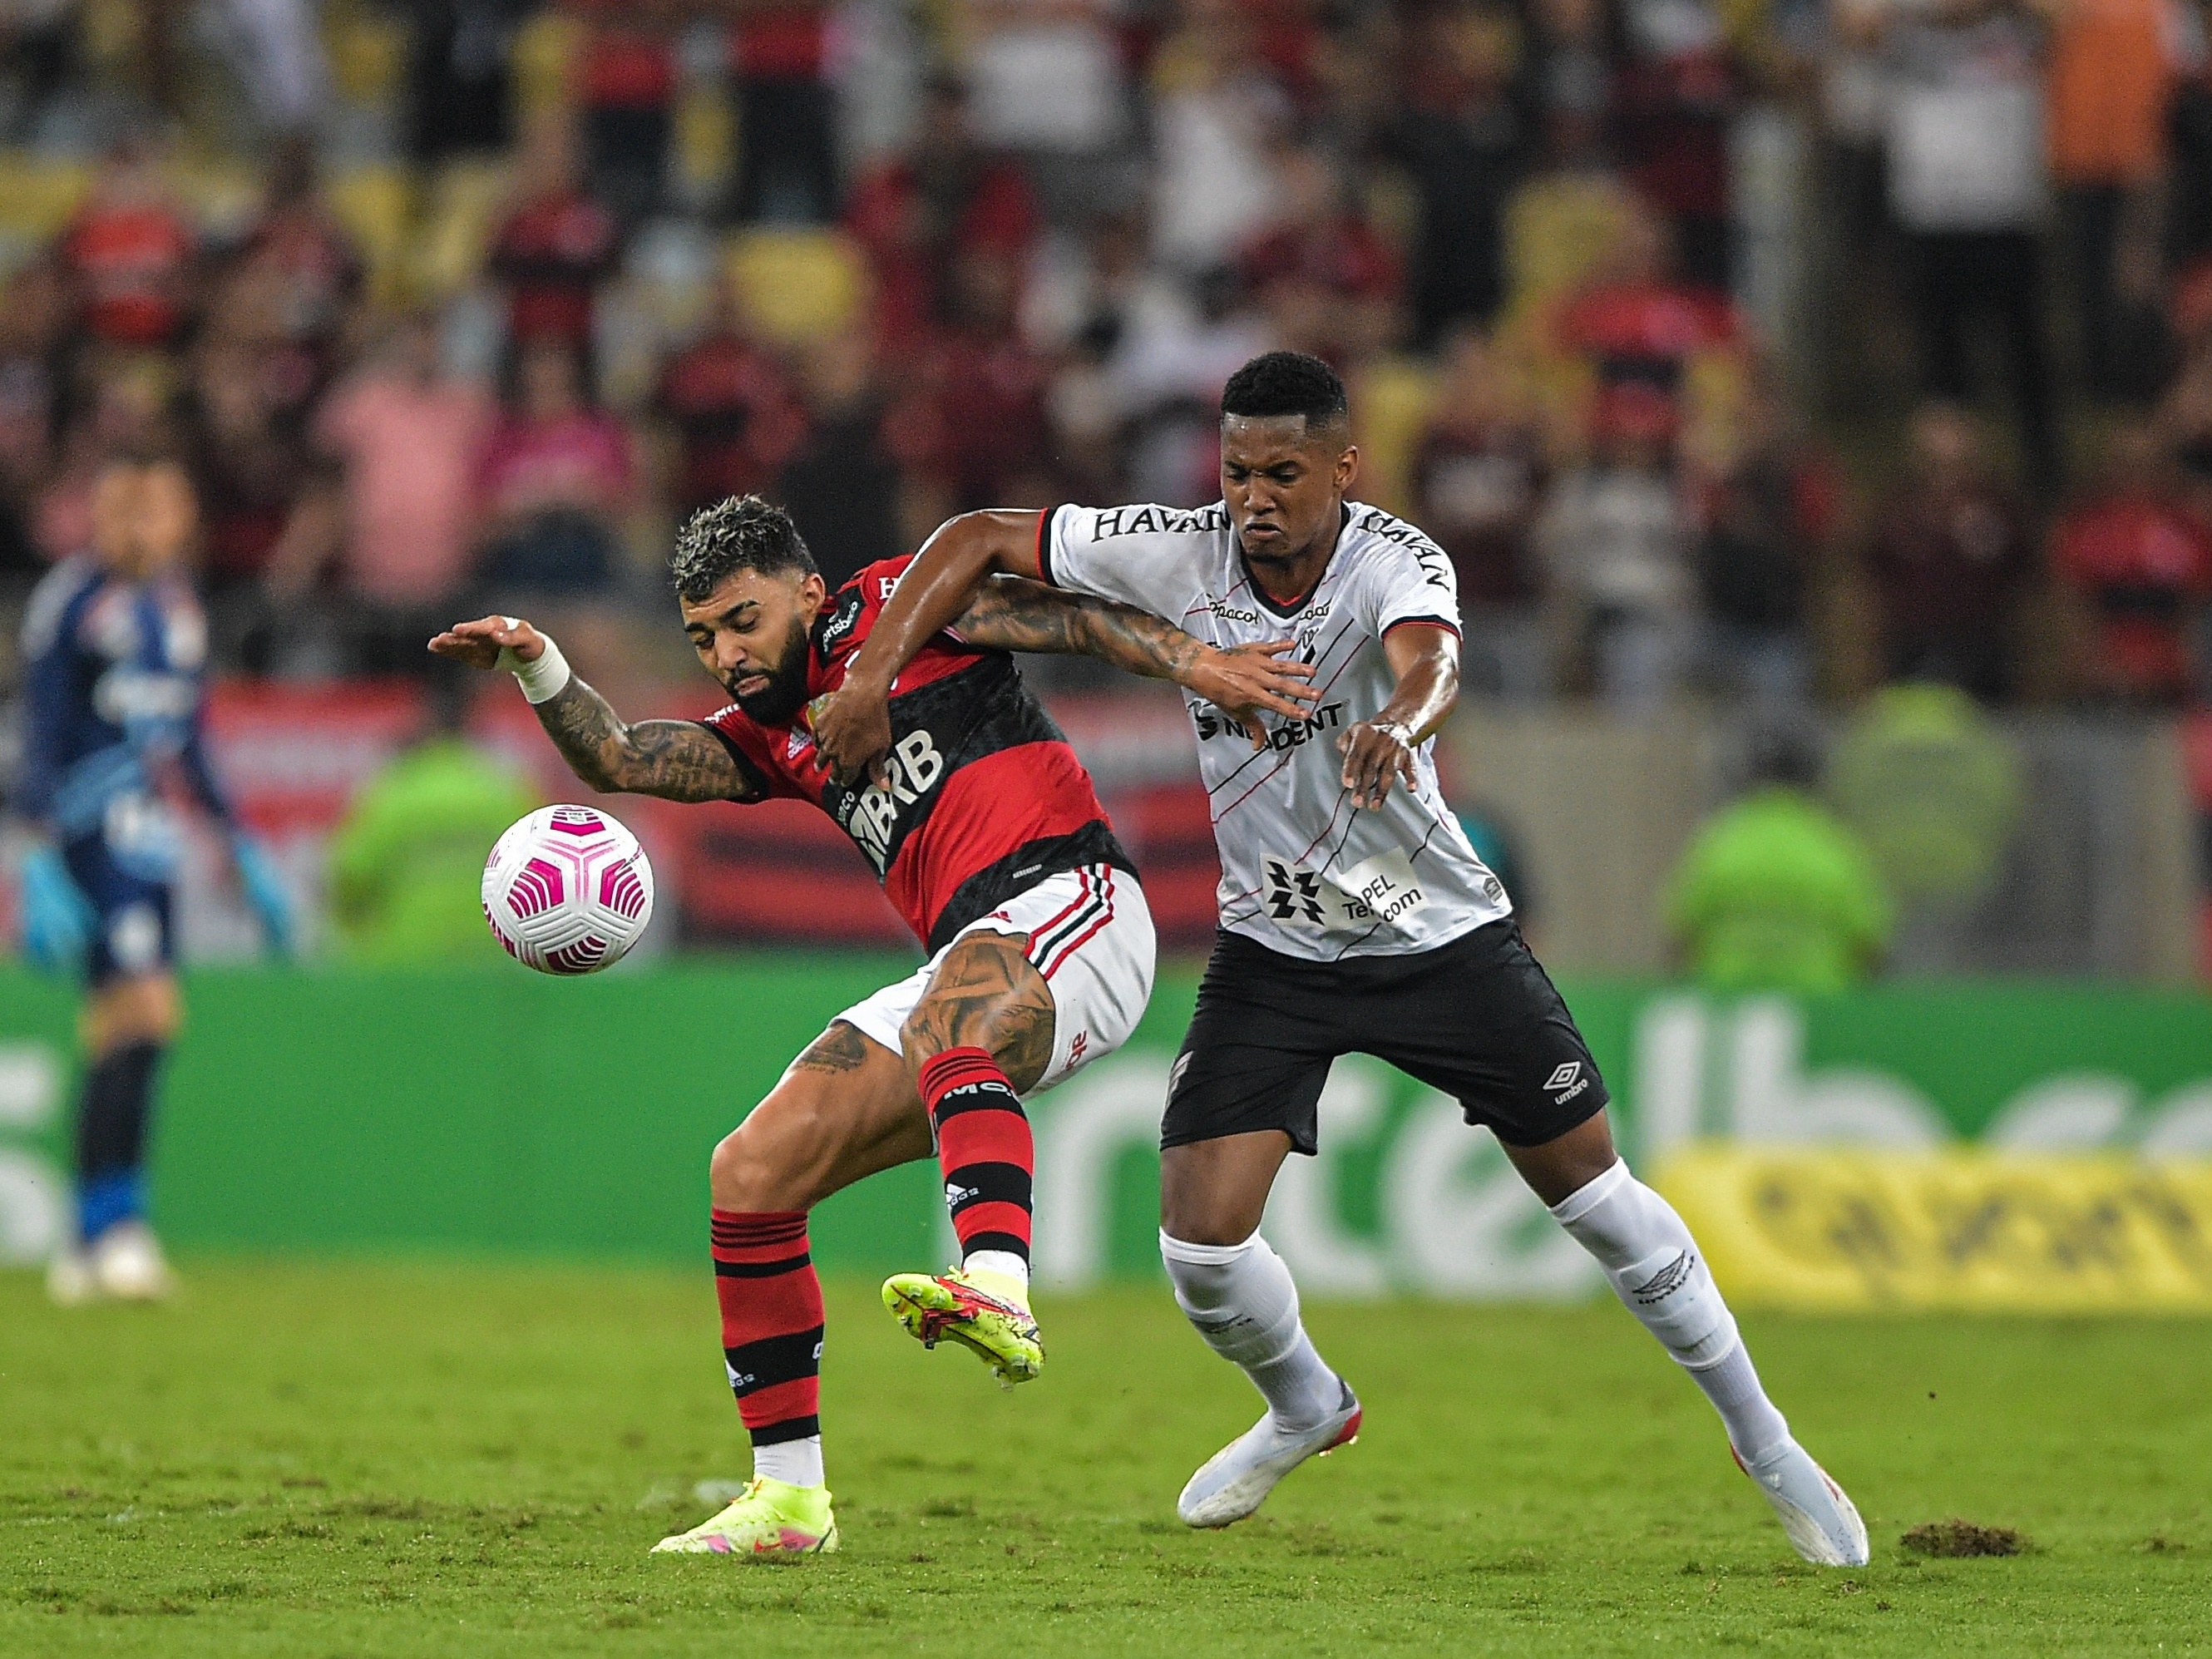 Mundial com Palmeiras ou Fla terá ingresso mais barato do que Libertadores  - 02/11/2021 - UOL Esporte